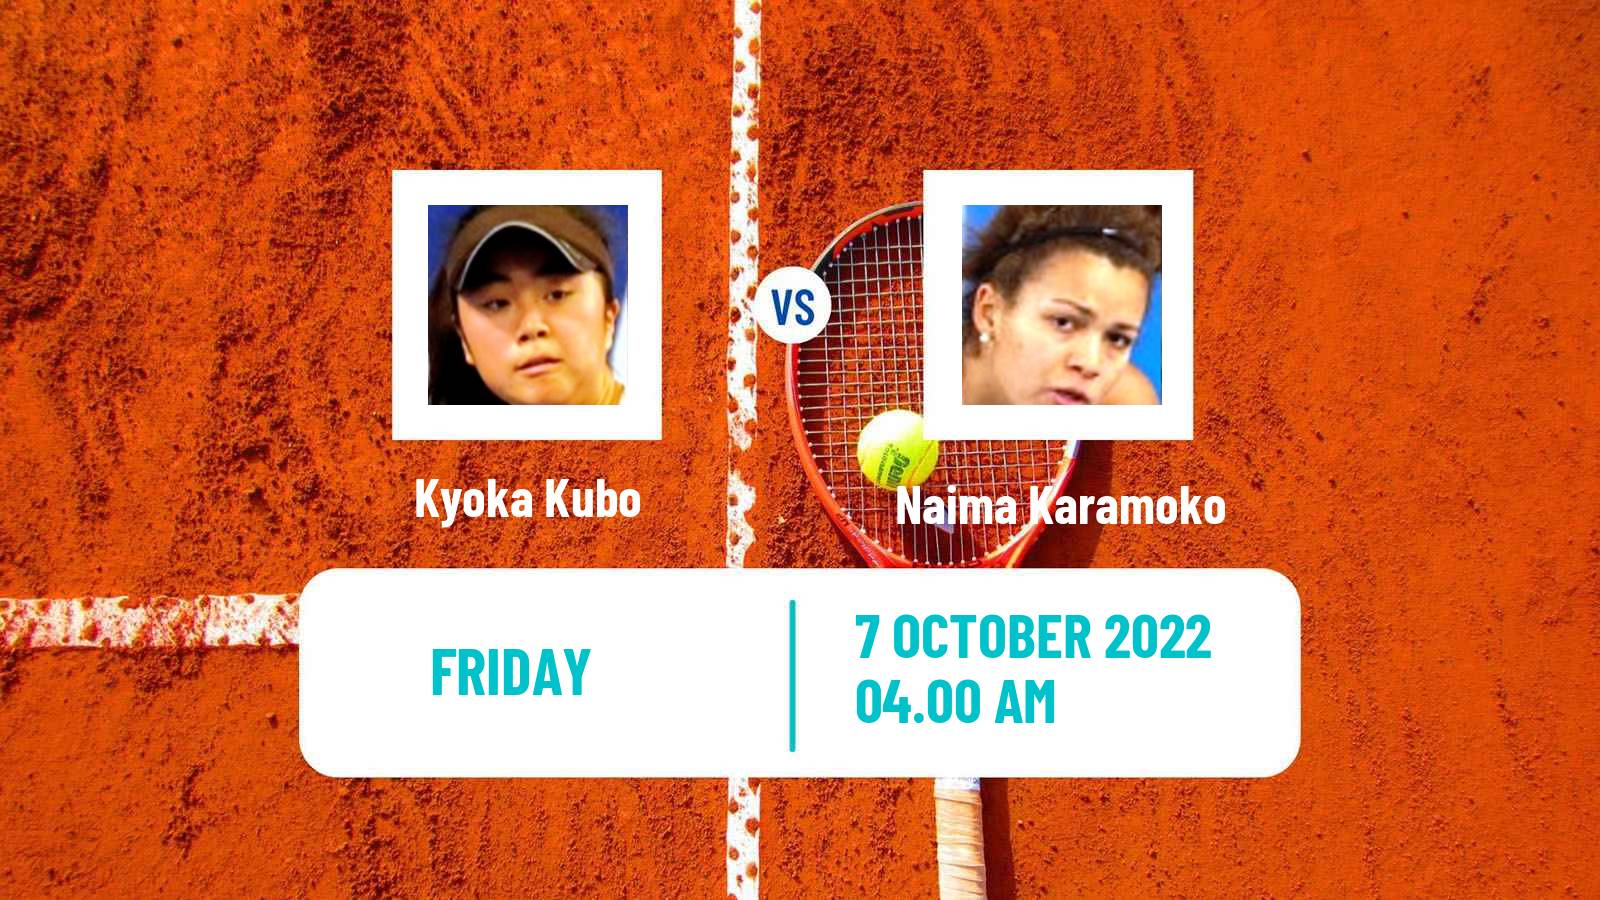 Tennis ITF Tournaments Kyoka Kubo - Naima Karamoko